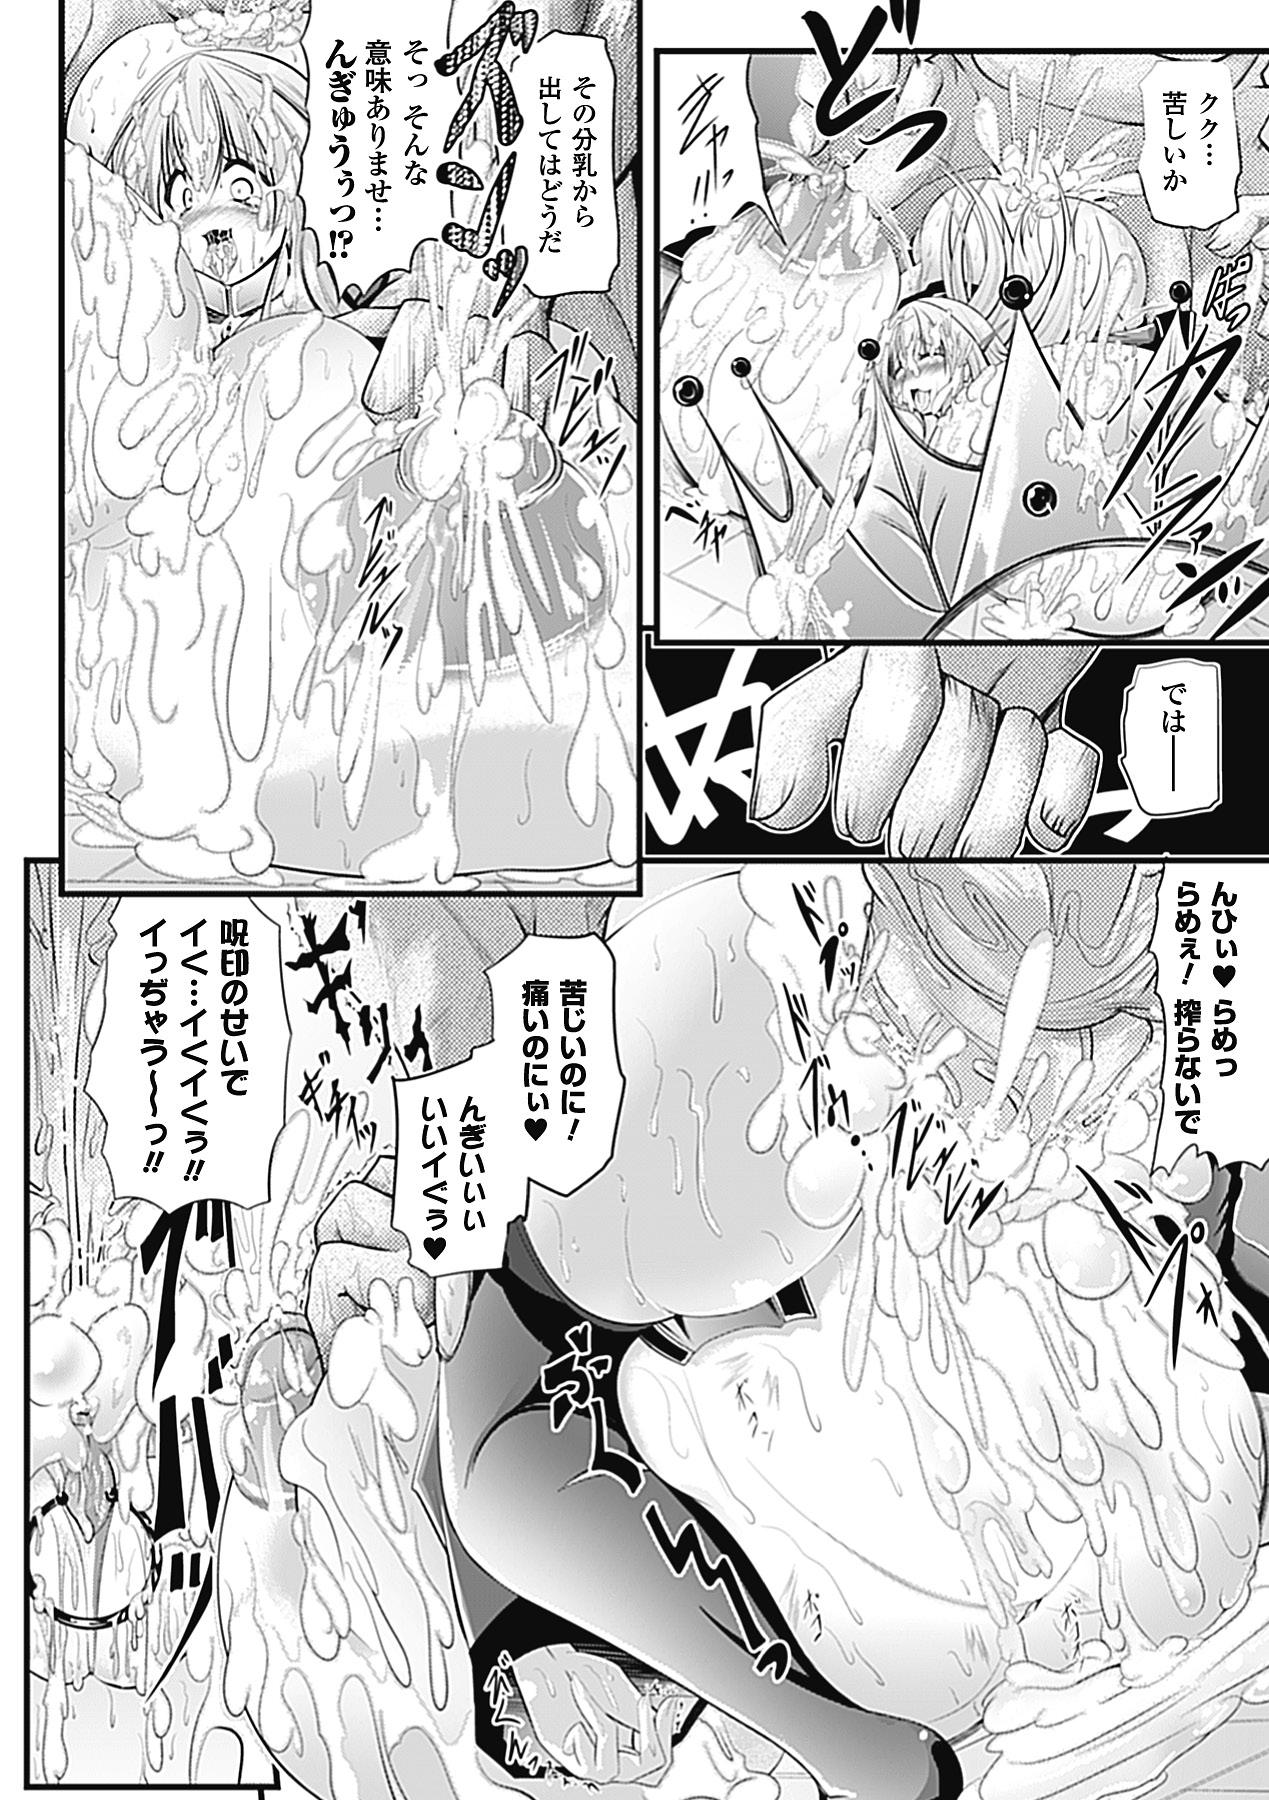 Bessatsu Comic Unreal Bakunyuu Fantasy Digital ver. Vol. 2 35